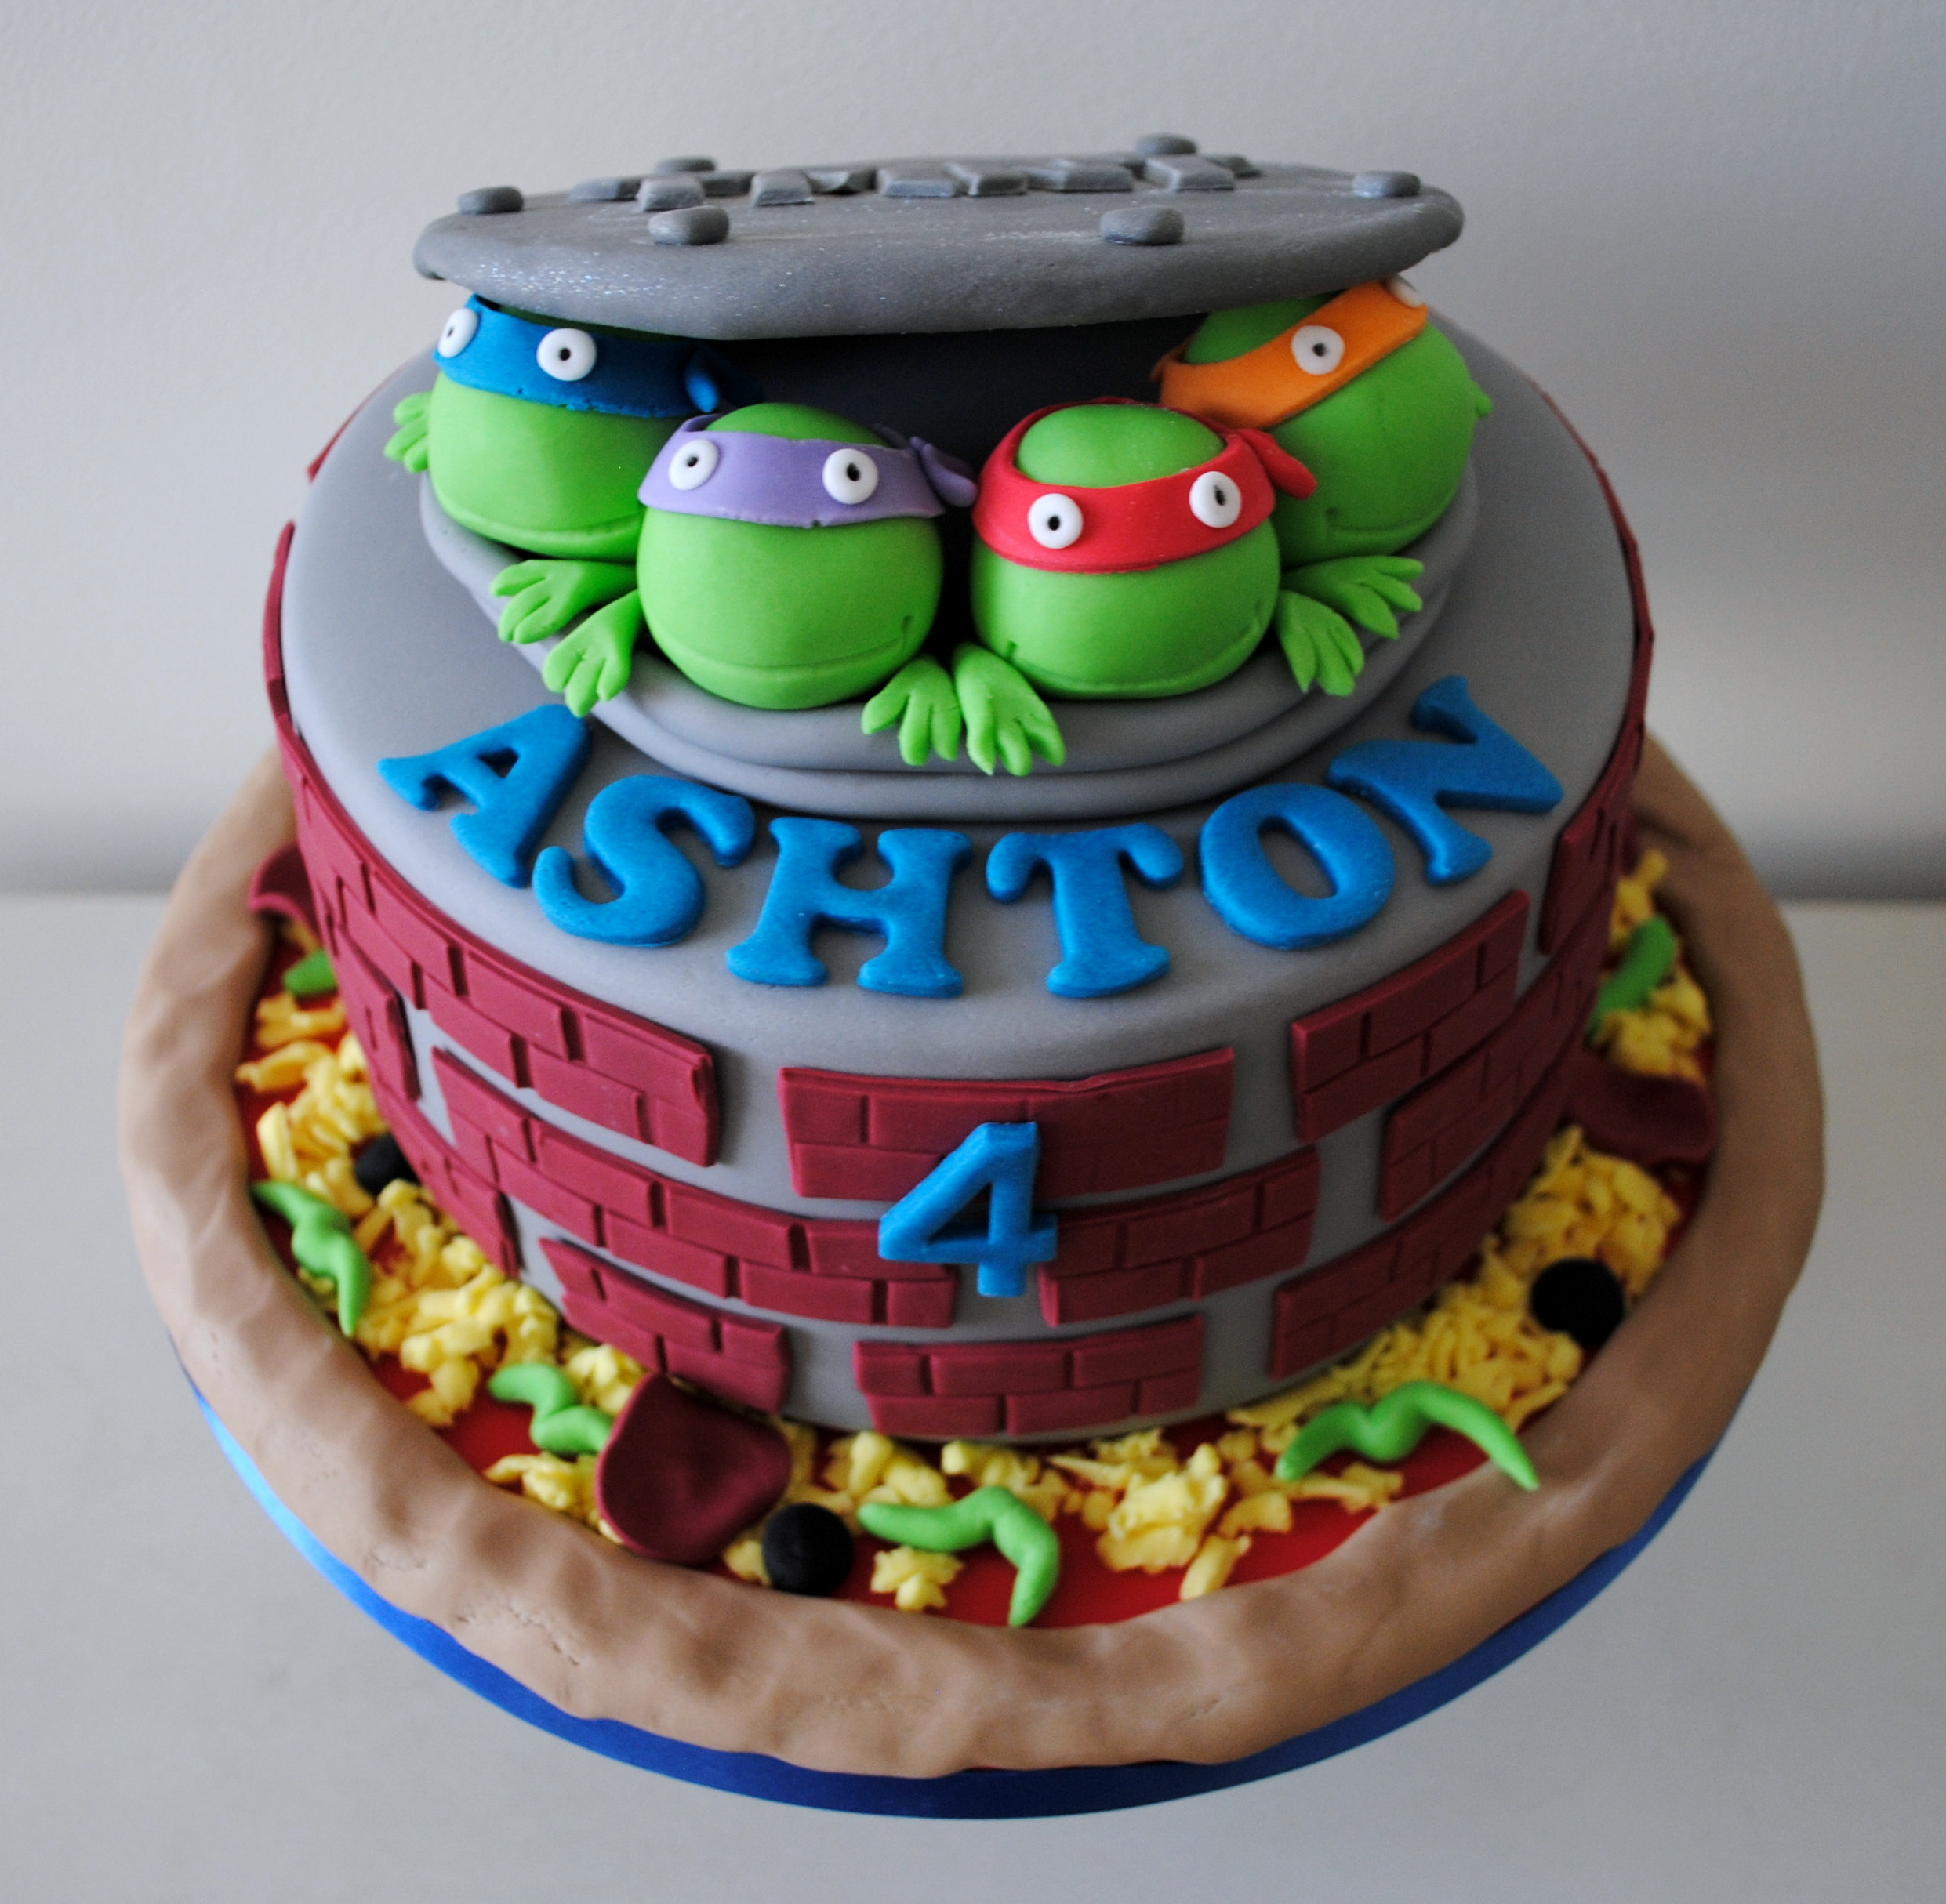 Teenage Mutant Ninja Turtles Birthday Cake
 Miss Cupcakes Blog Archive Teenage mutant ninja turtle